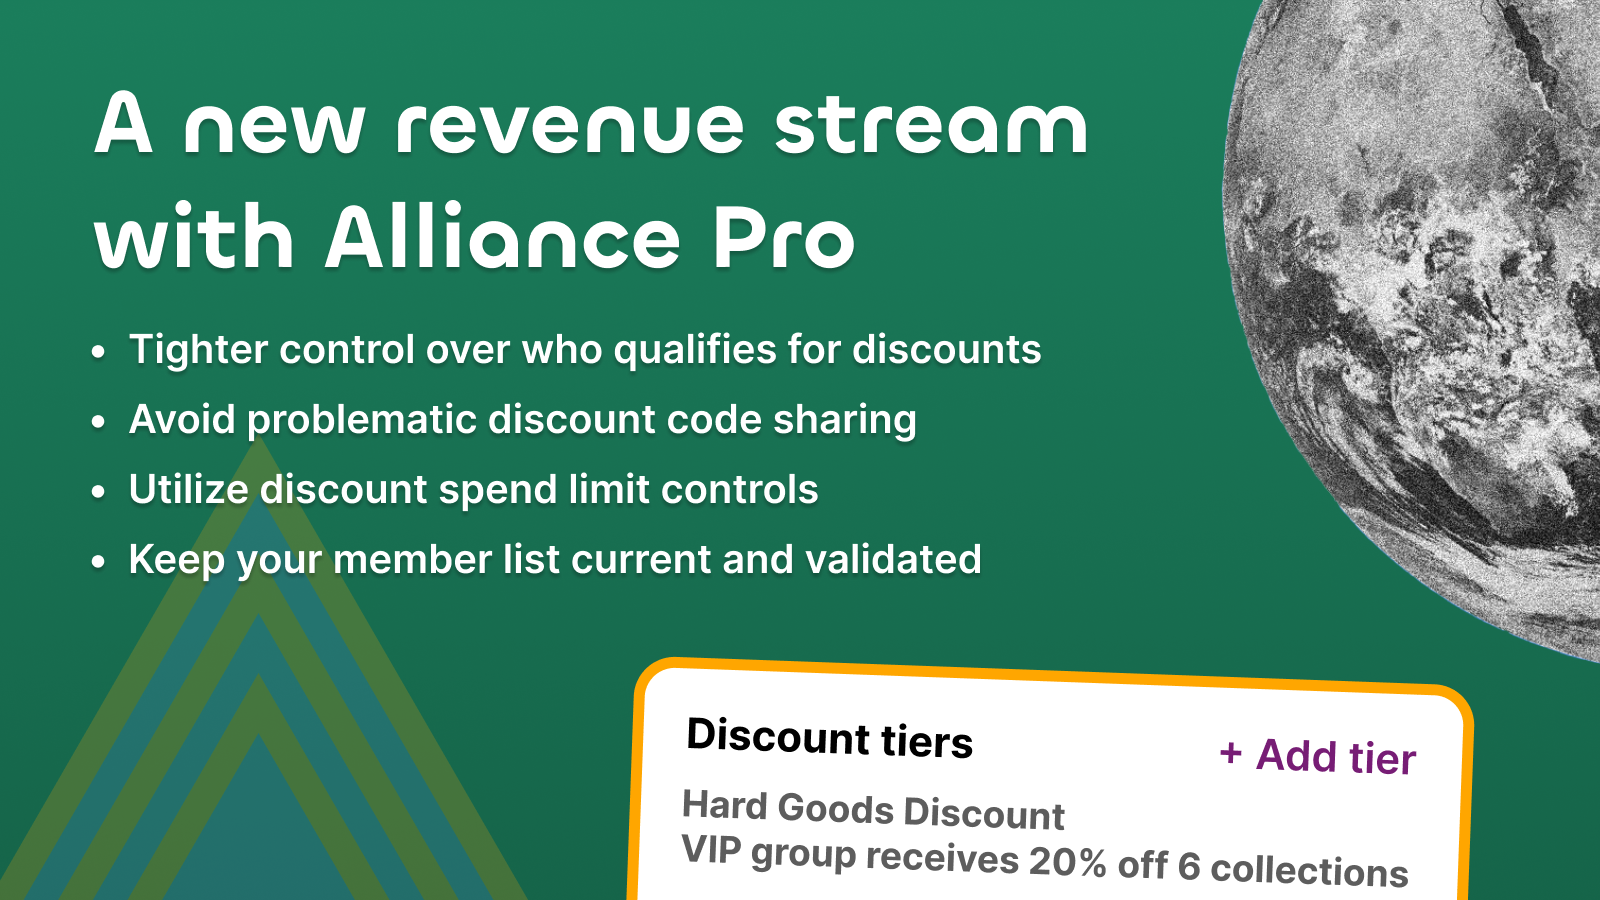 En ny inkomstkälla med Alliance Pro